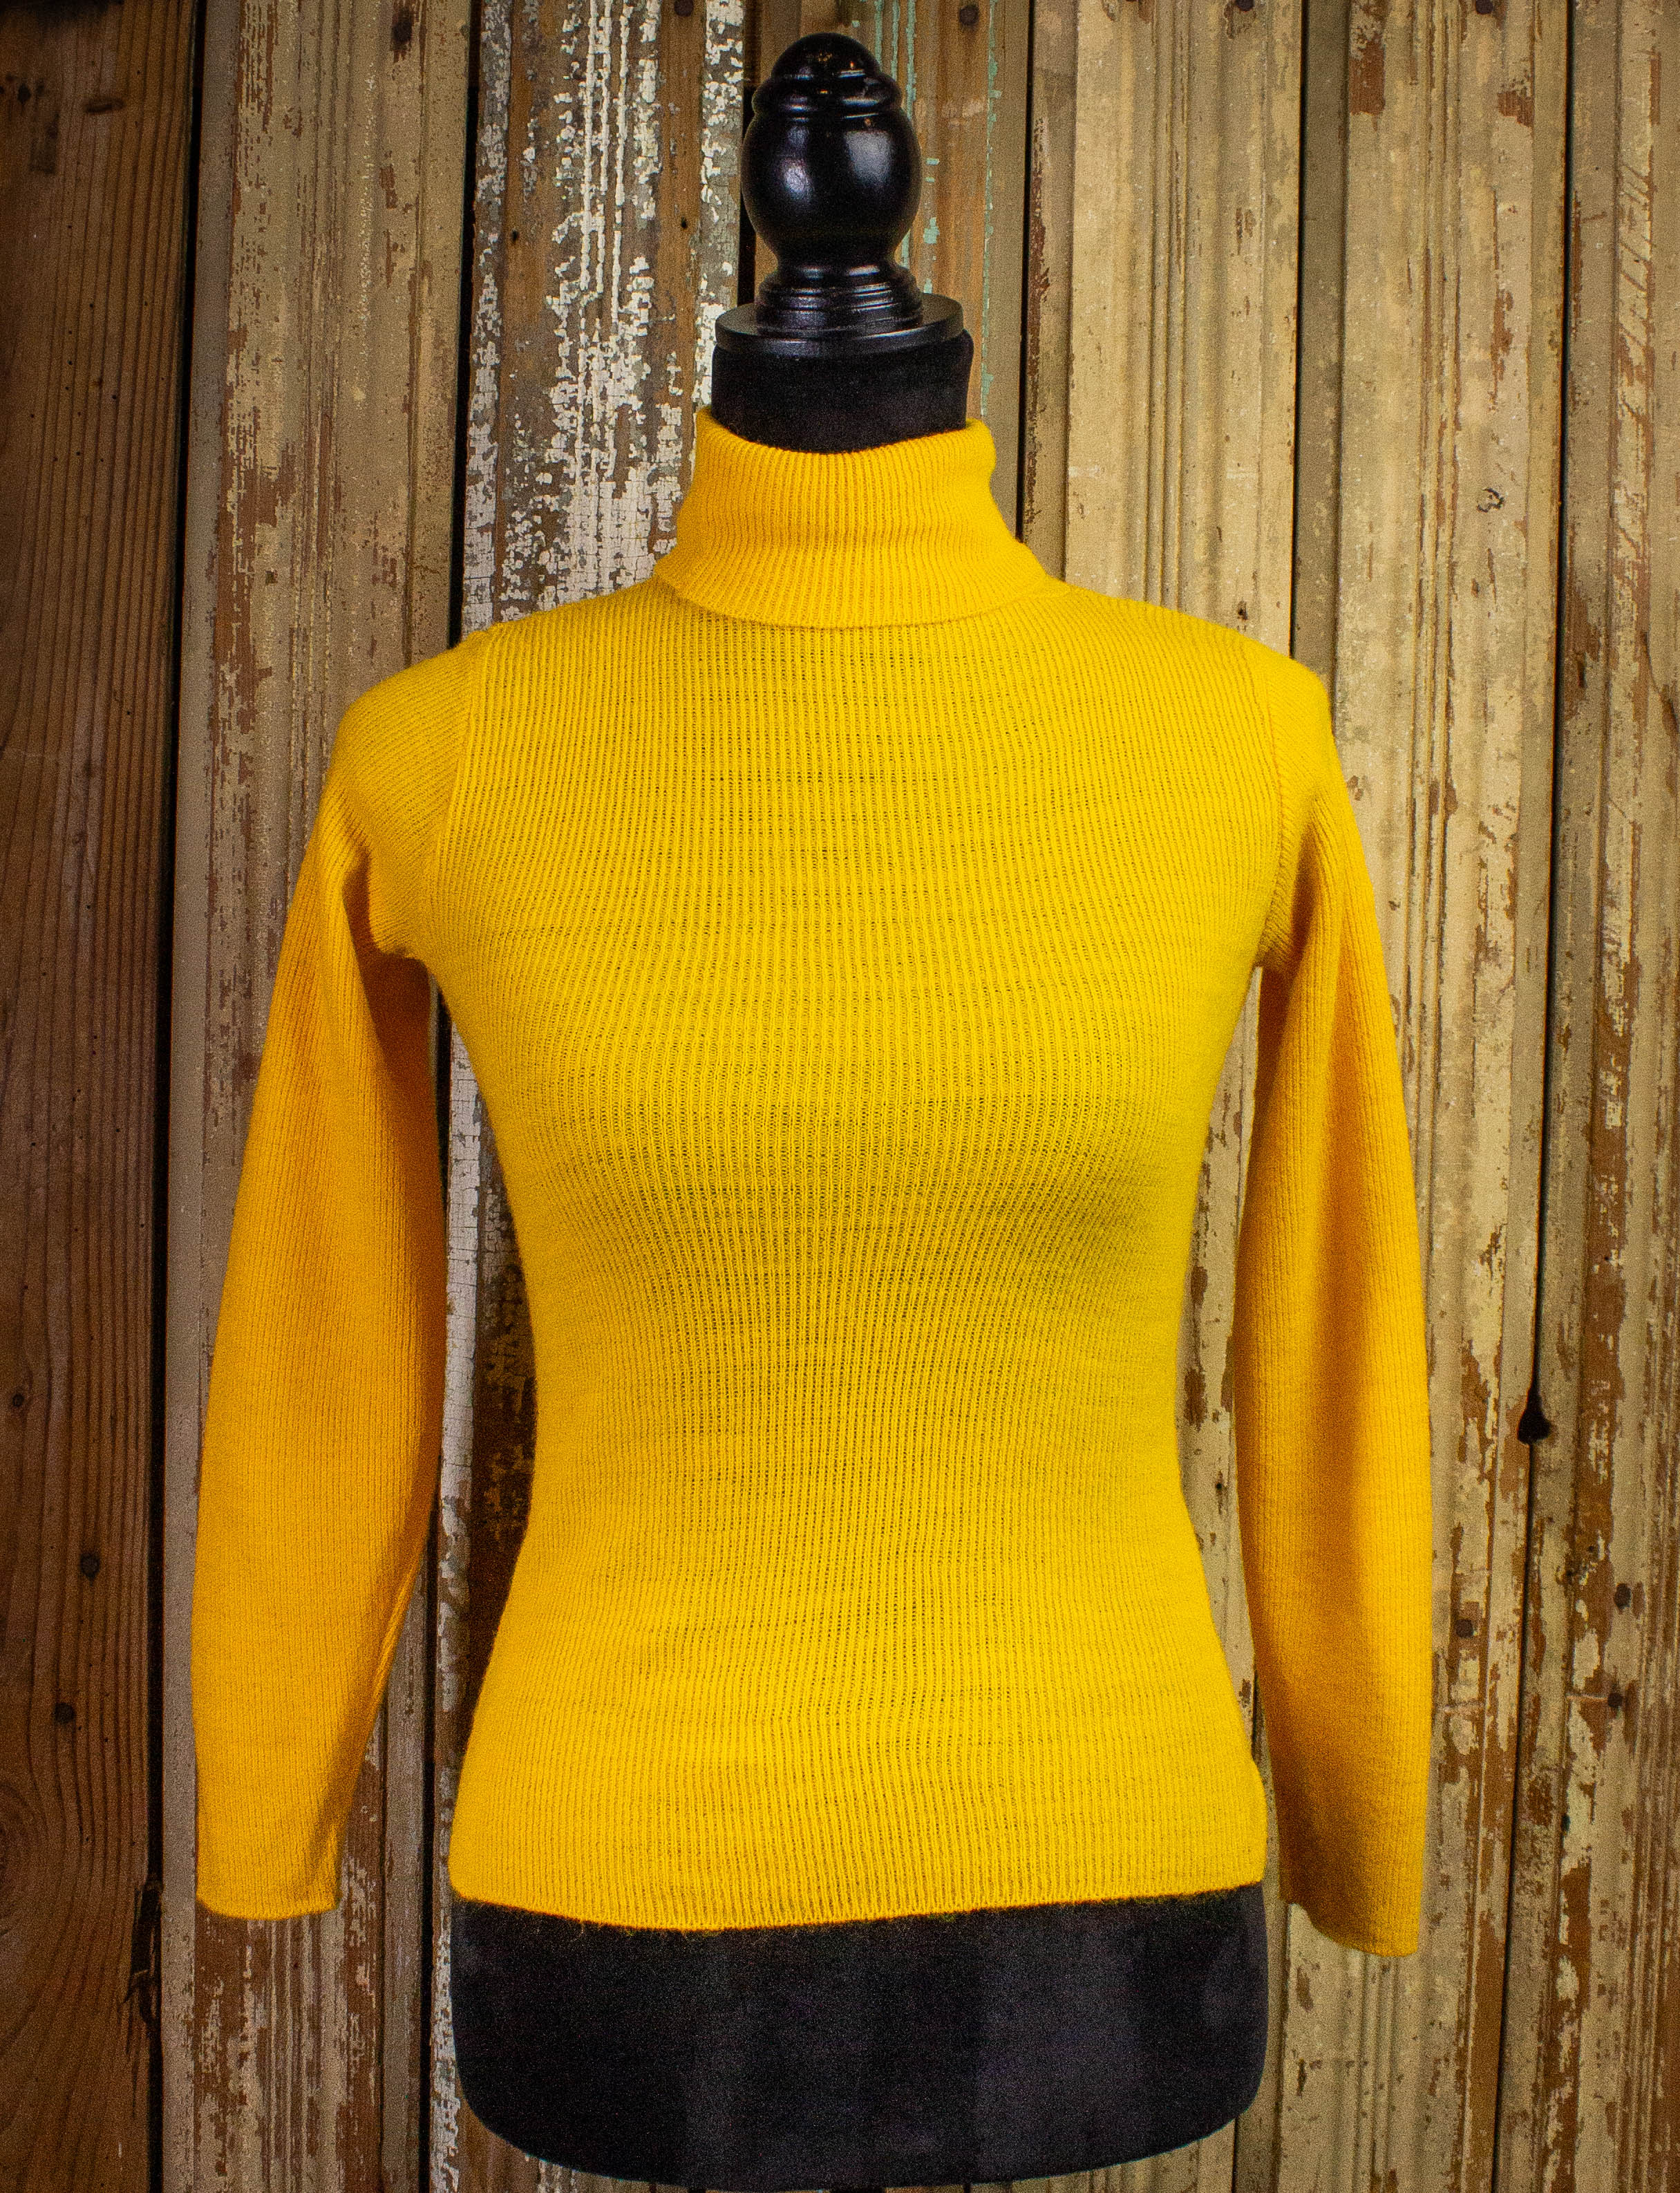 It's Groovy Mustard Yellow Multi Knit Turtleneck Sweater Dress